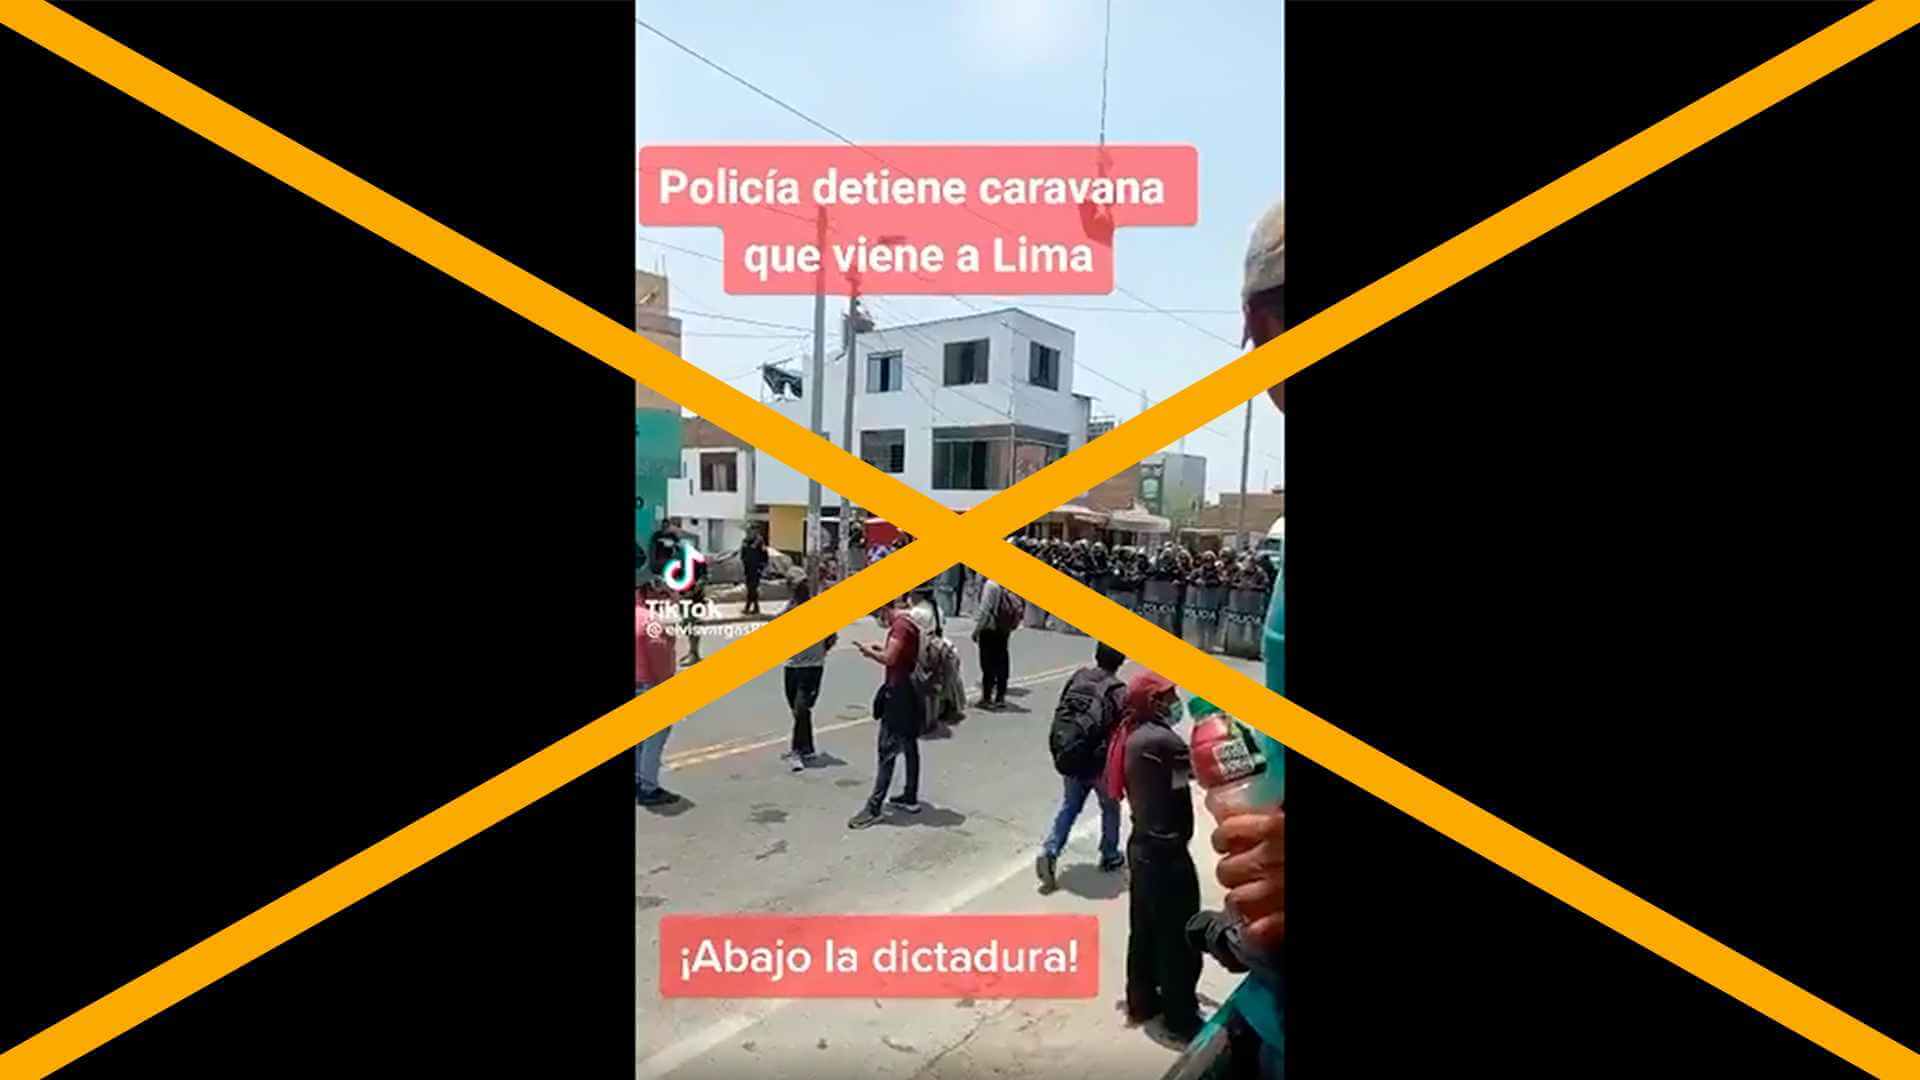 Engañoso: video sobre intervención policial a una caravana que se dirige a protestar en Lima no es de marzo